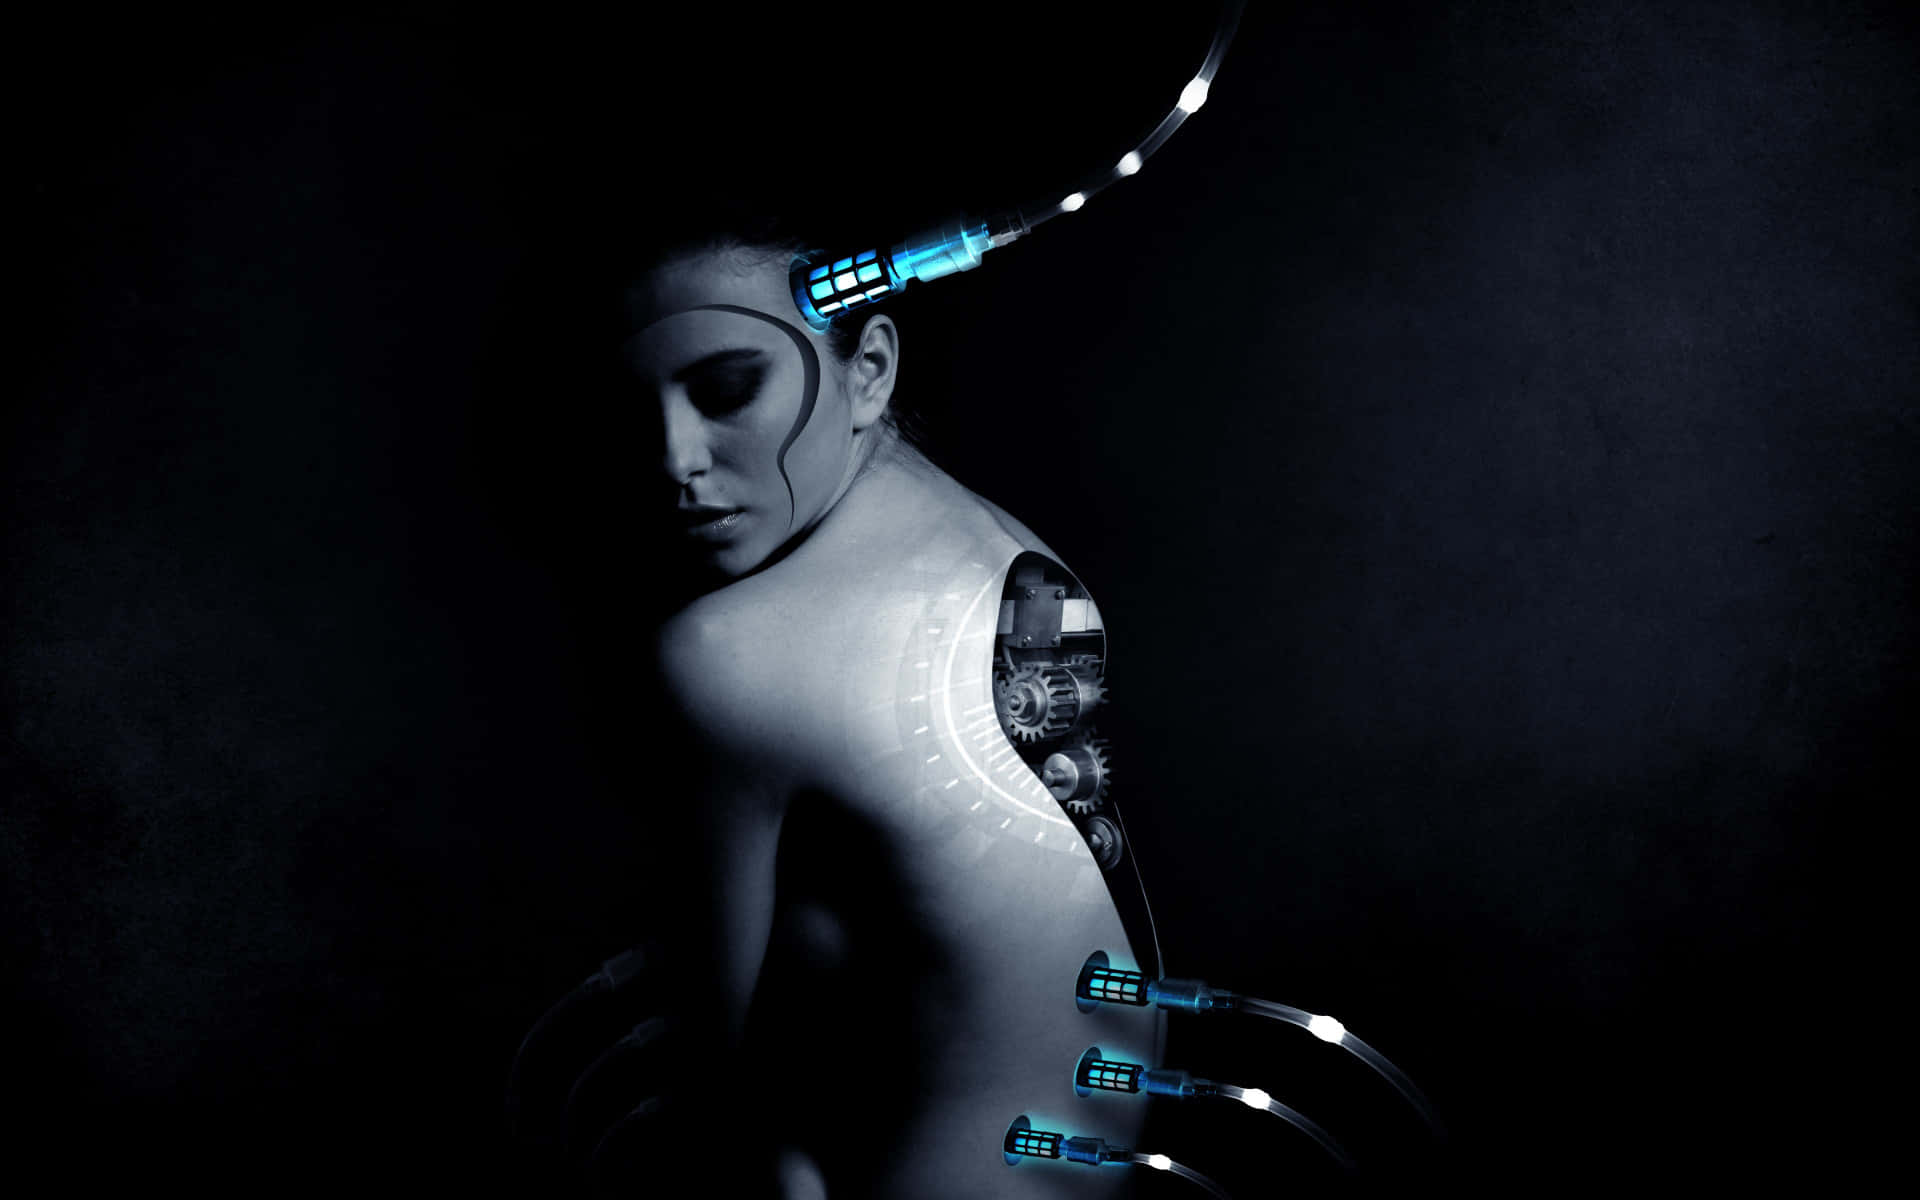 Imagende Una Mujer Robot De Inteligencia Artificial.